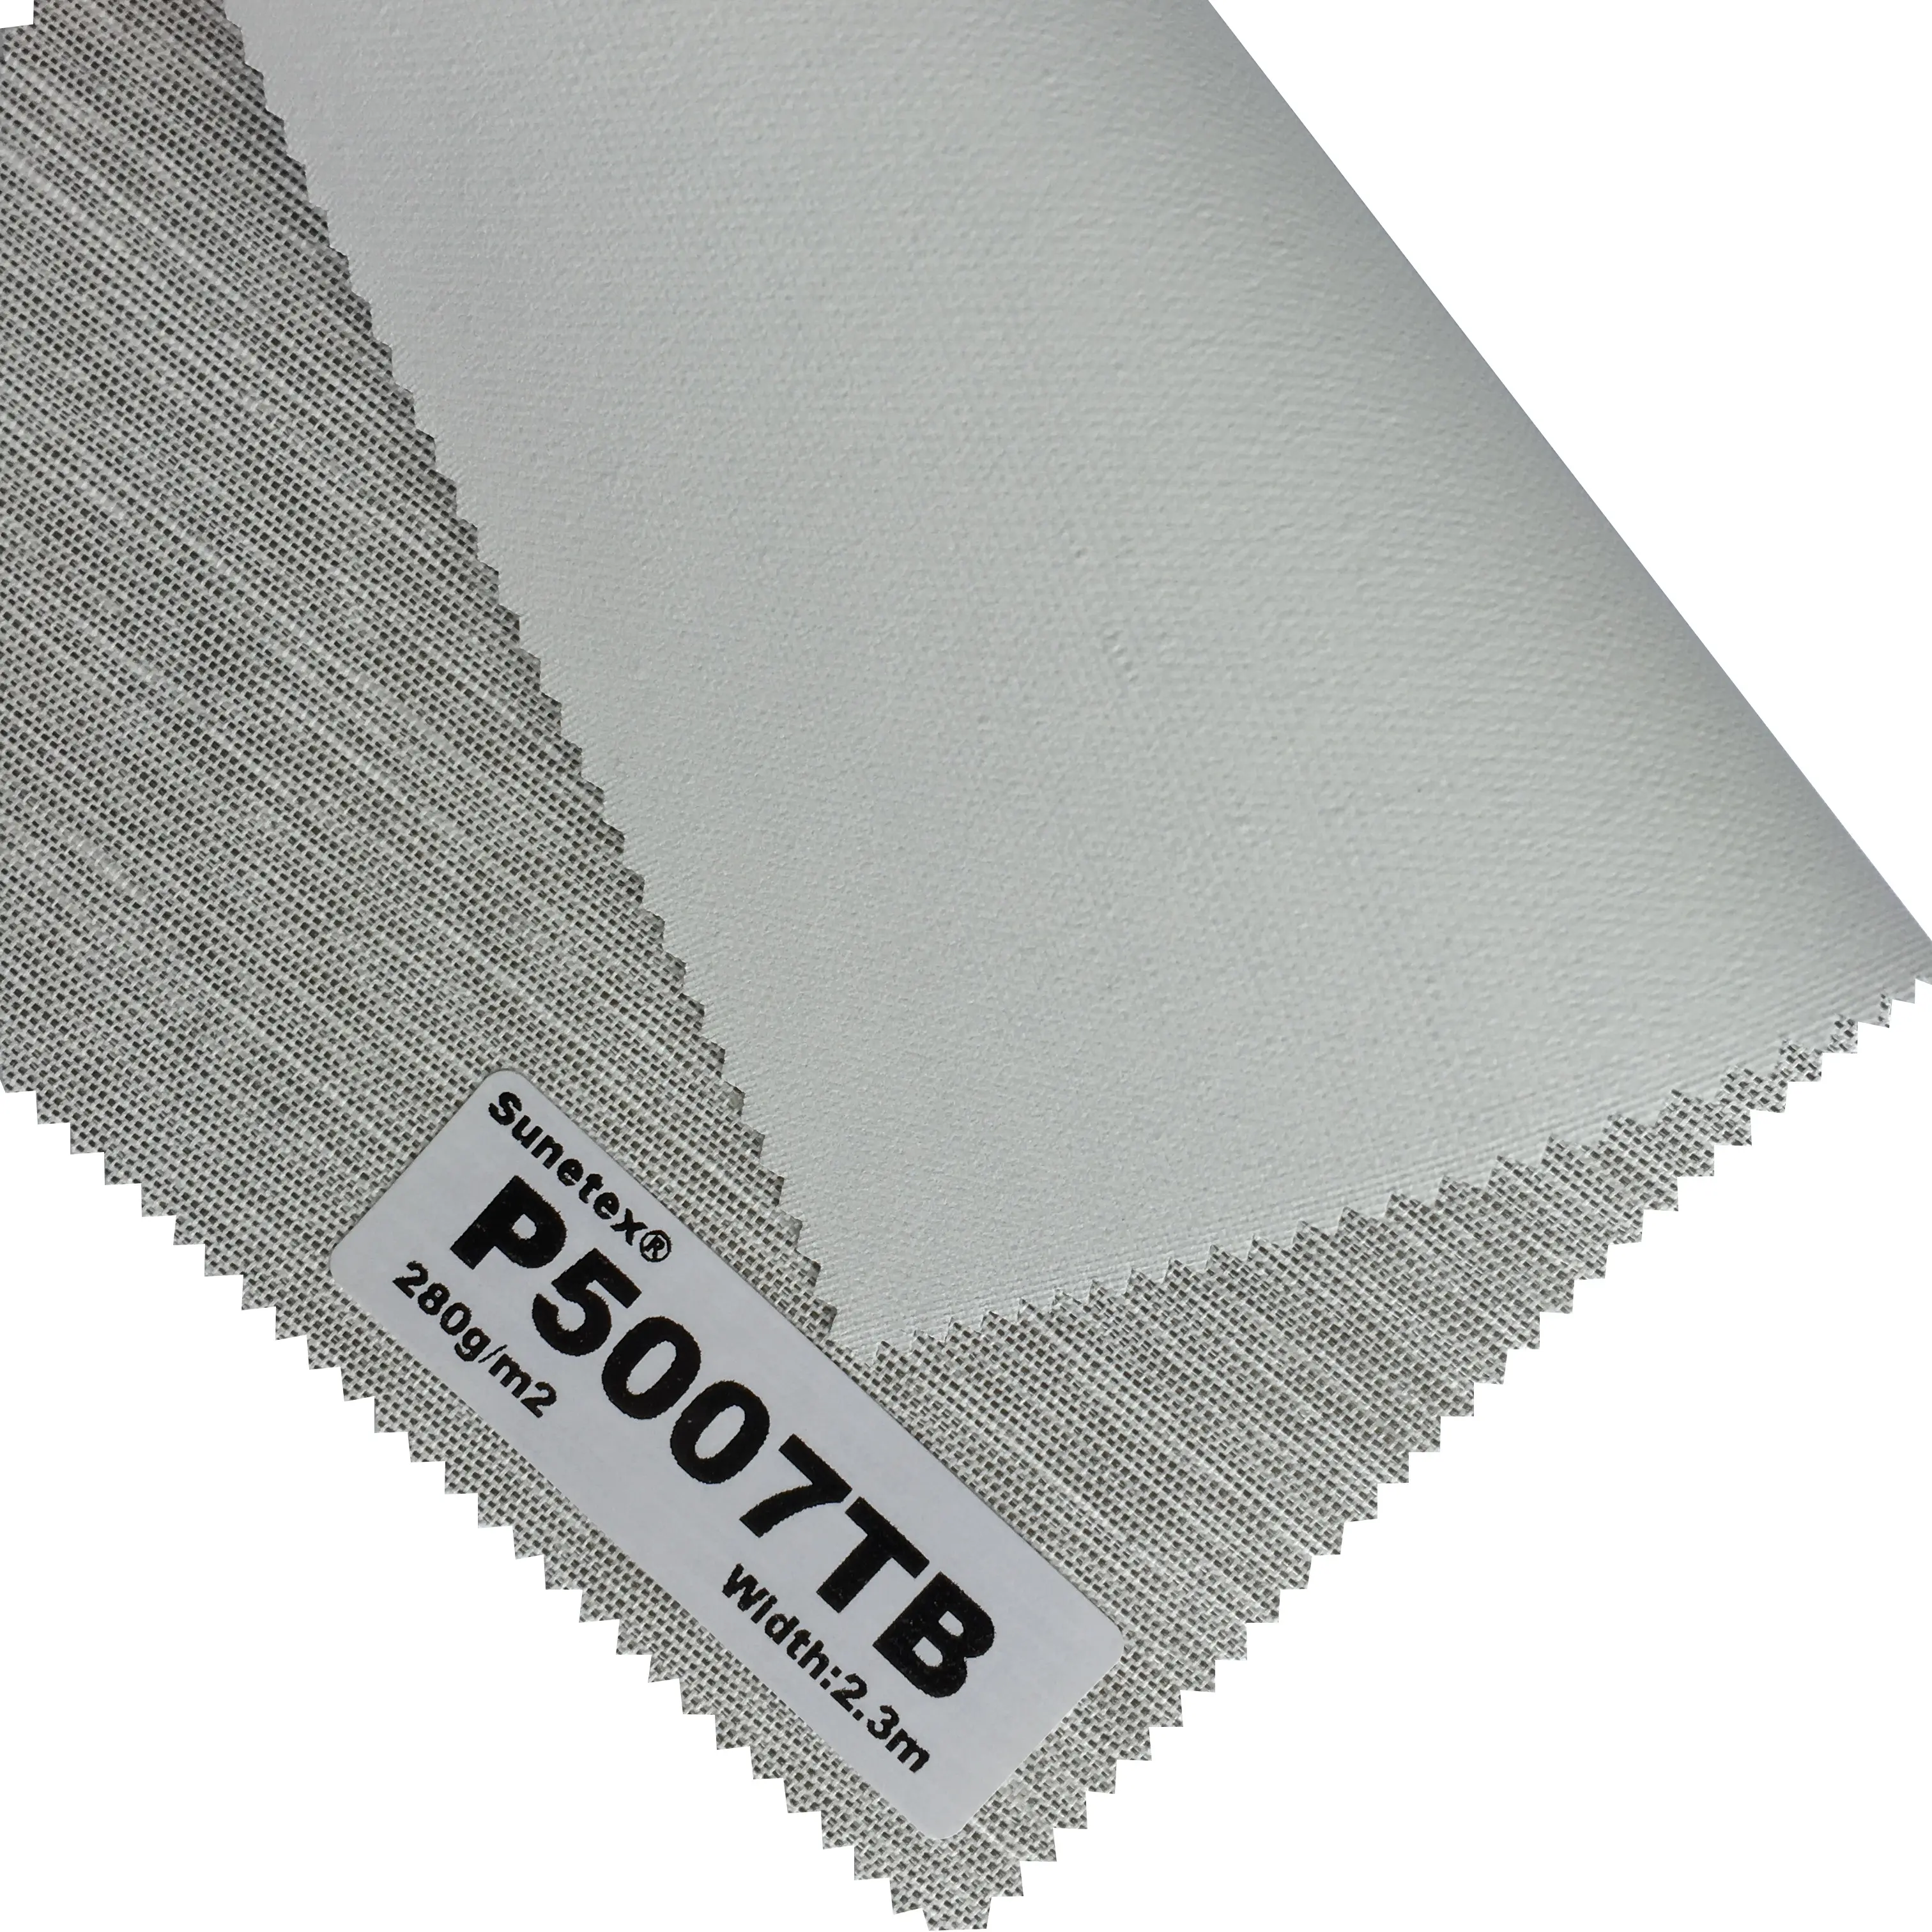 Roller Schatten Teile 30% Polyester Vorhang Stoff Blind Stoff